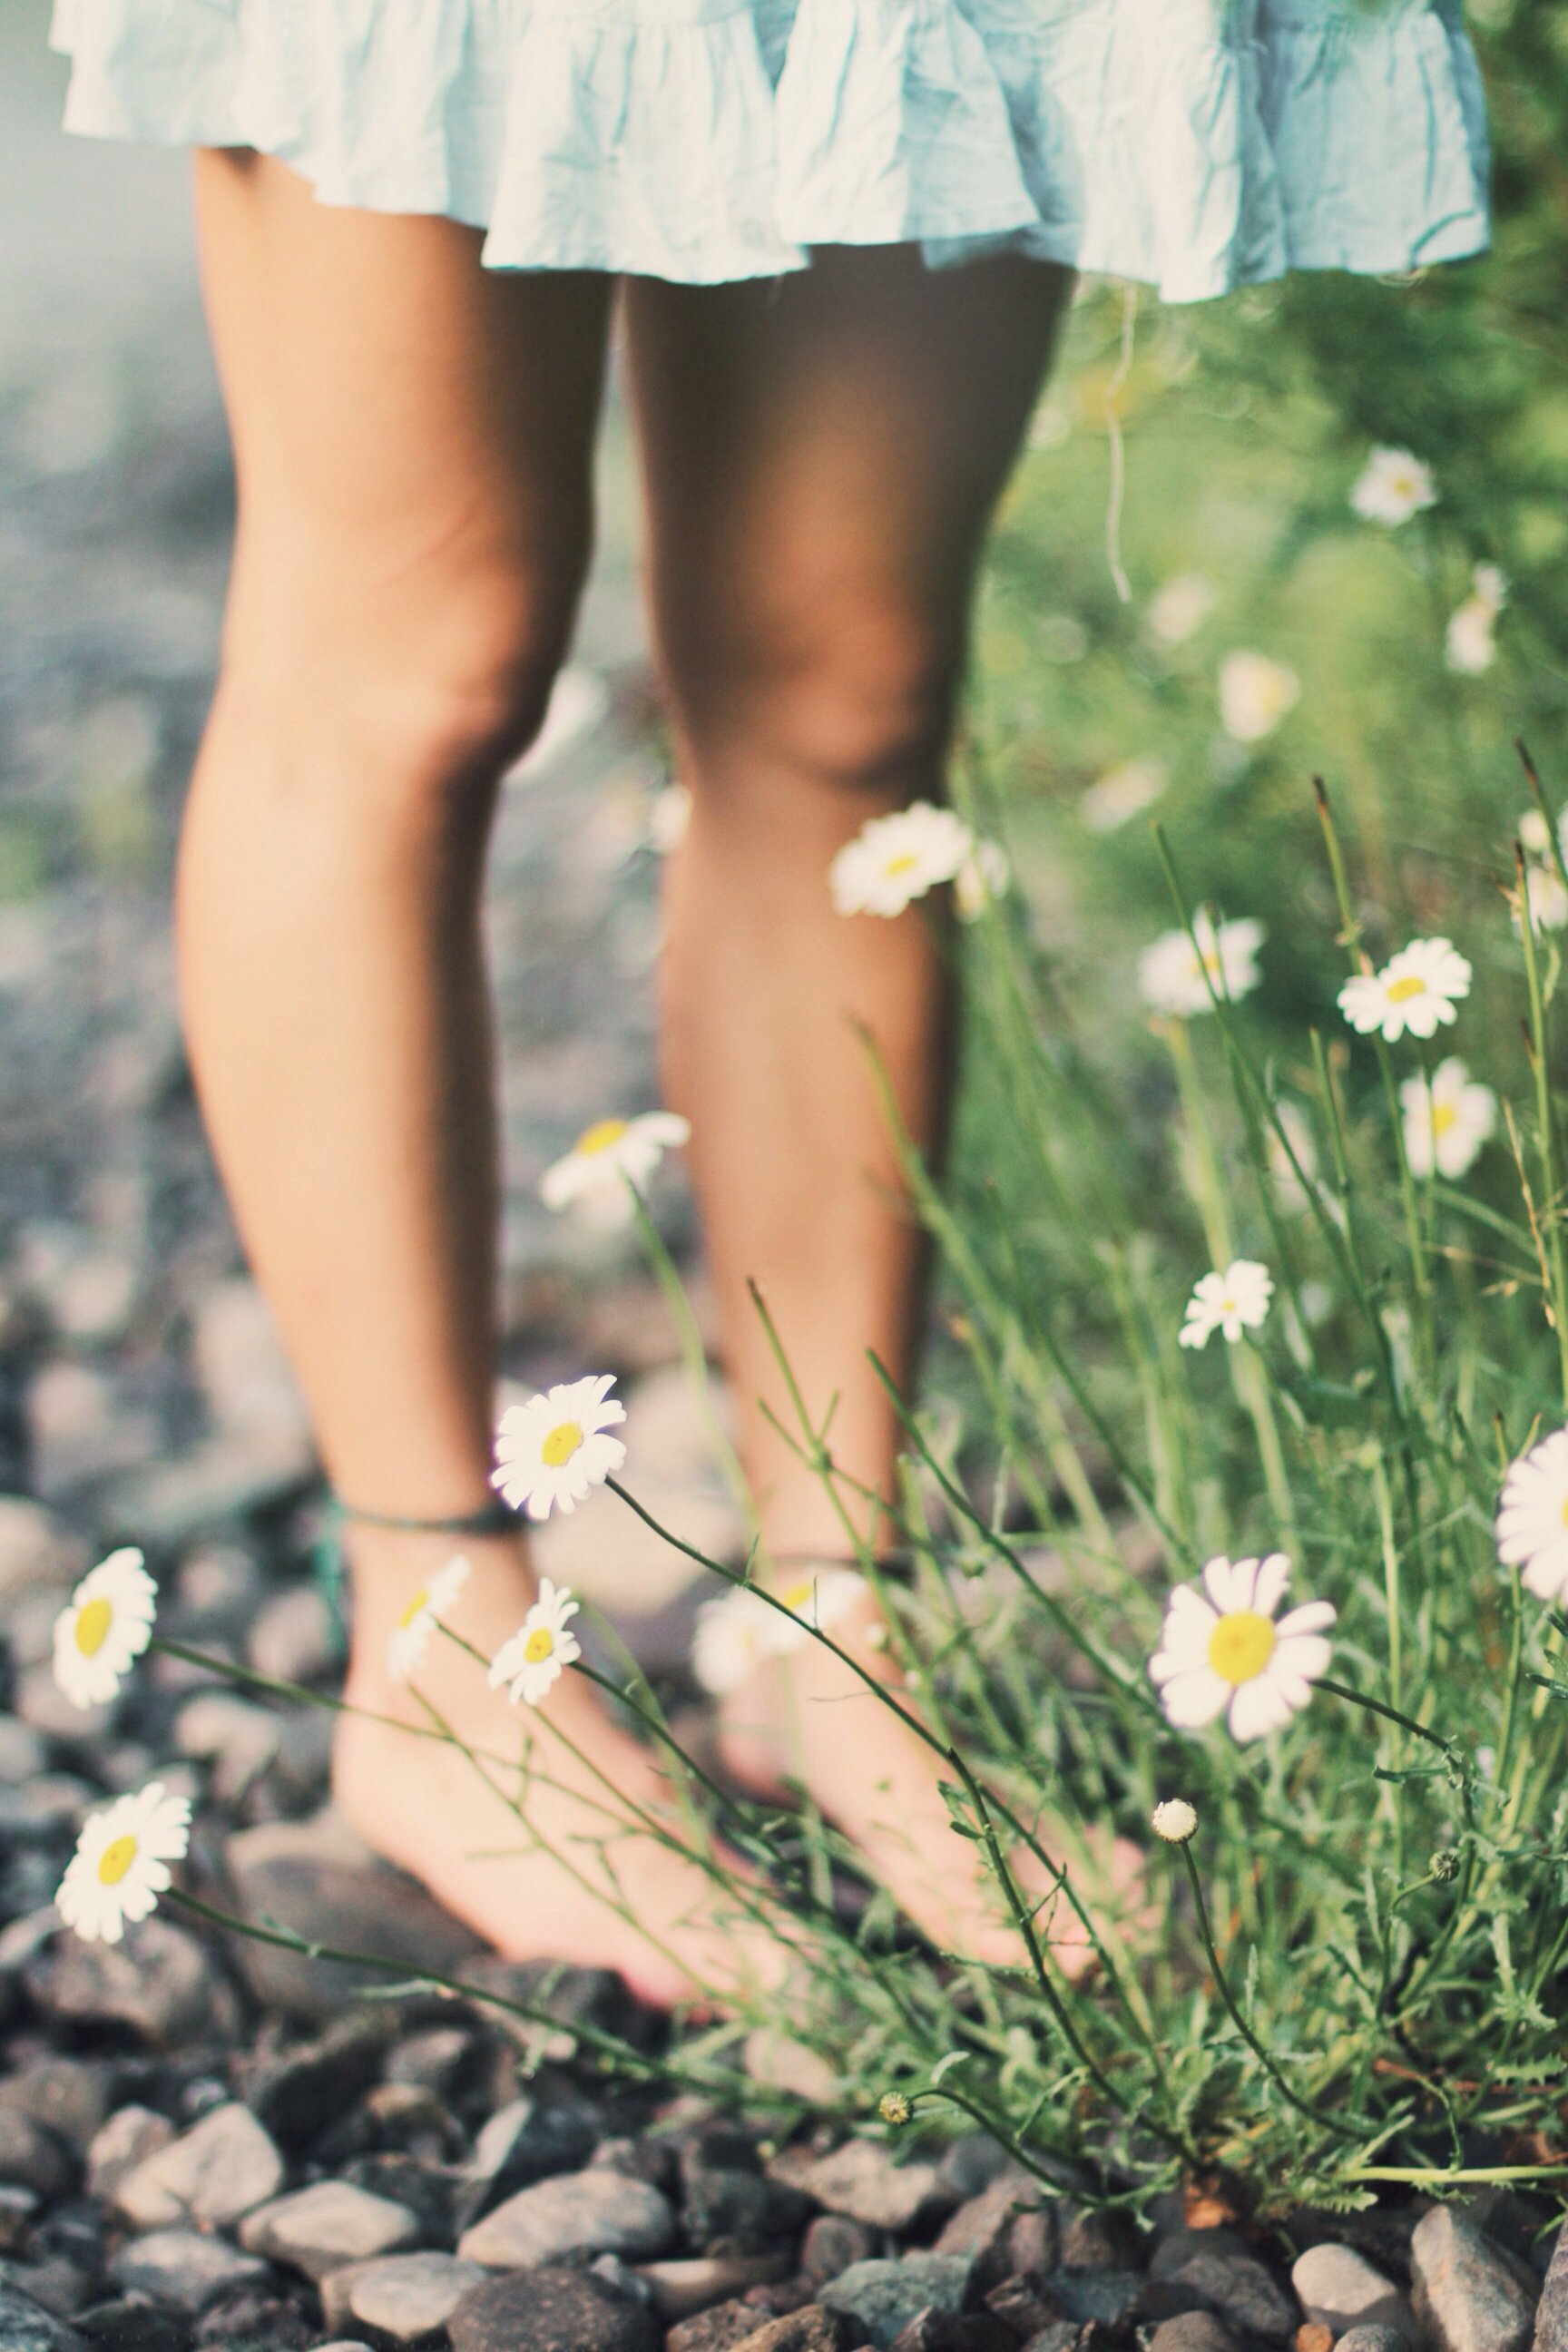 Mulher em pé em gramado e pedras com flores